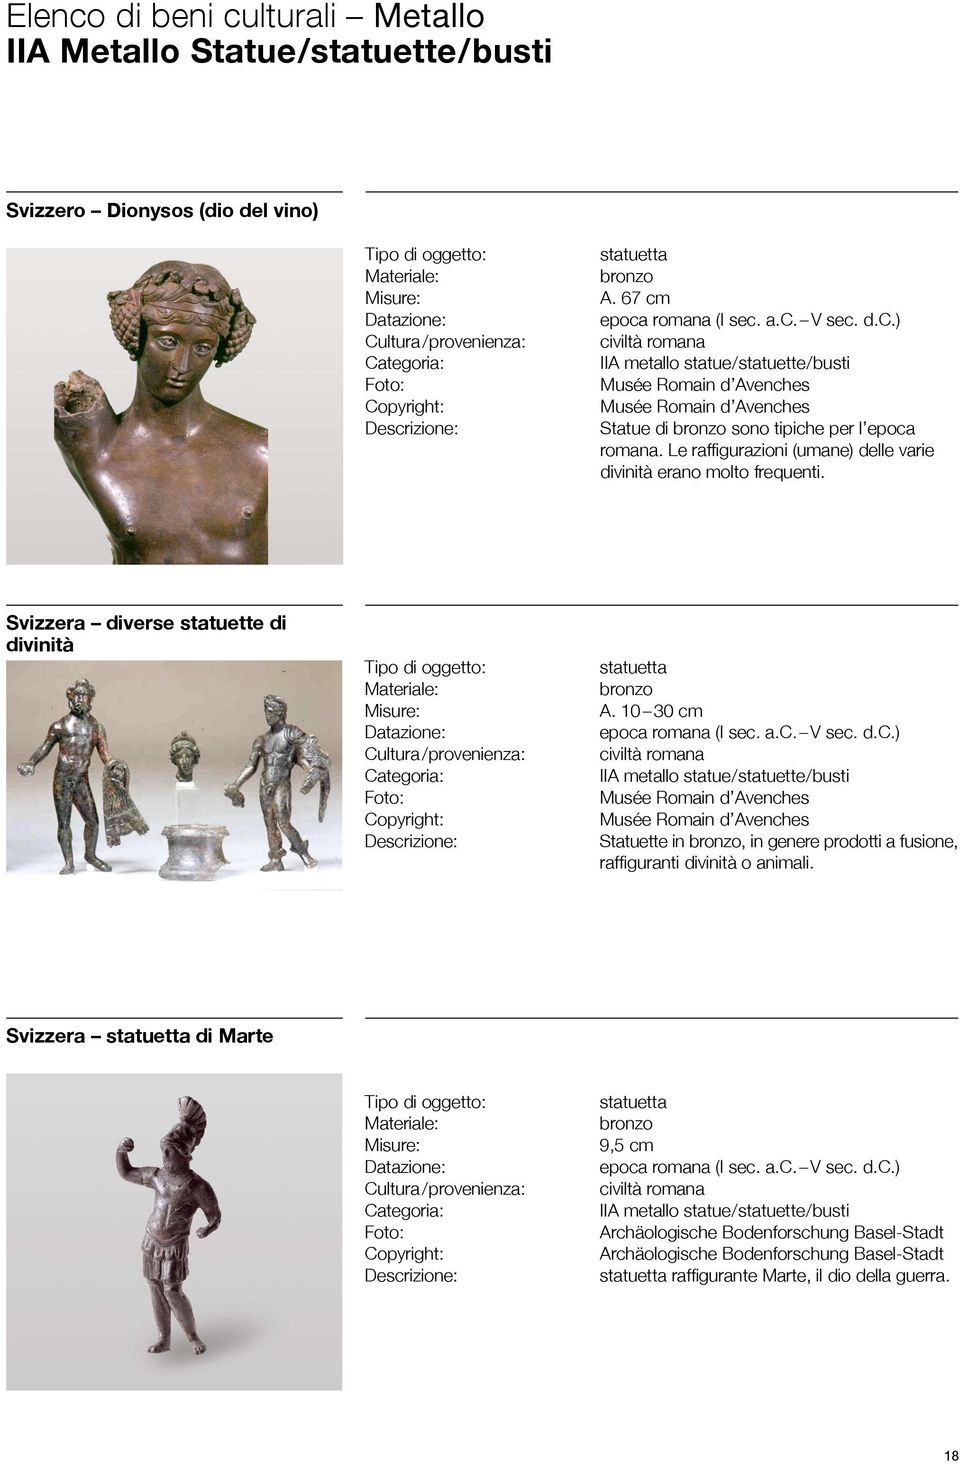 Le raffigurazioni (umane) delle varie divinità erano molto frequenti. Svizzera diverse statuette di divinità statuetta bronzo A.